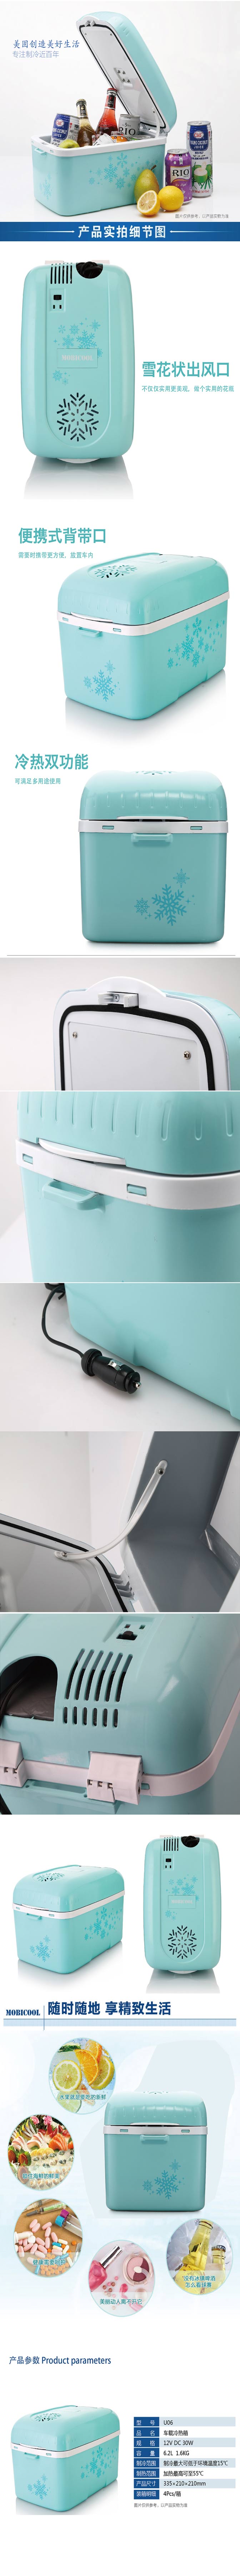 美固车载冷暖箱便携带mini小冰箱-保温箱-U06.jpg